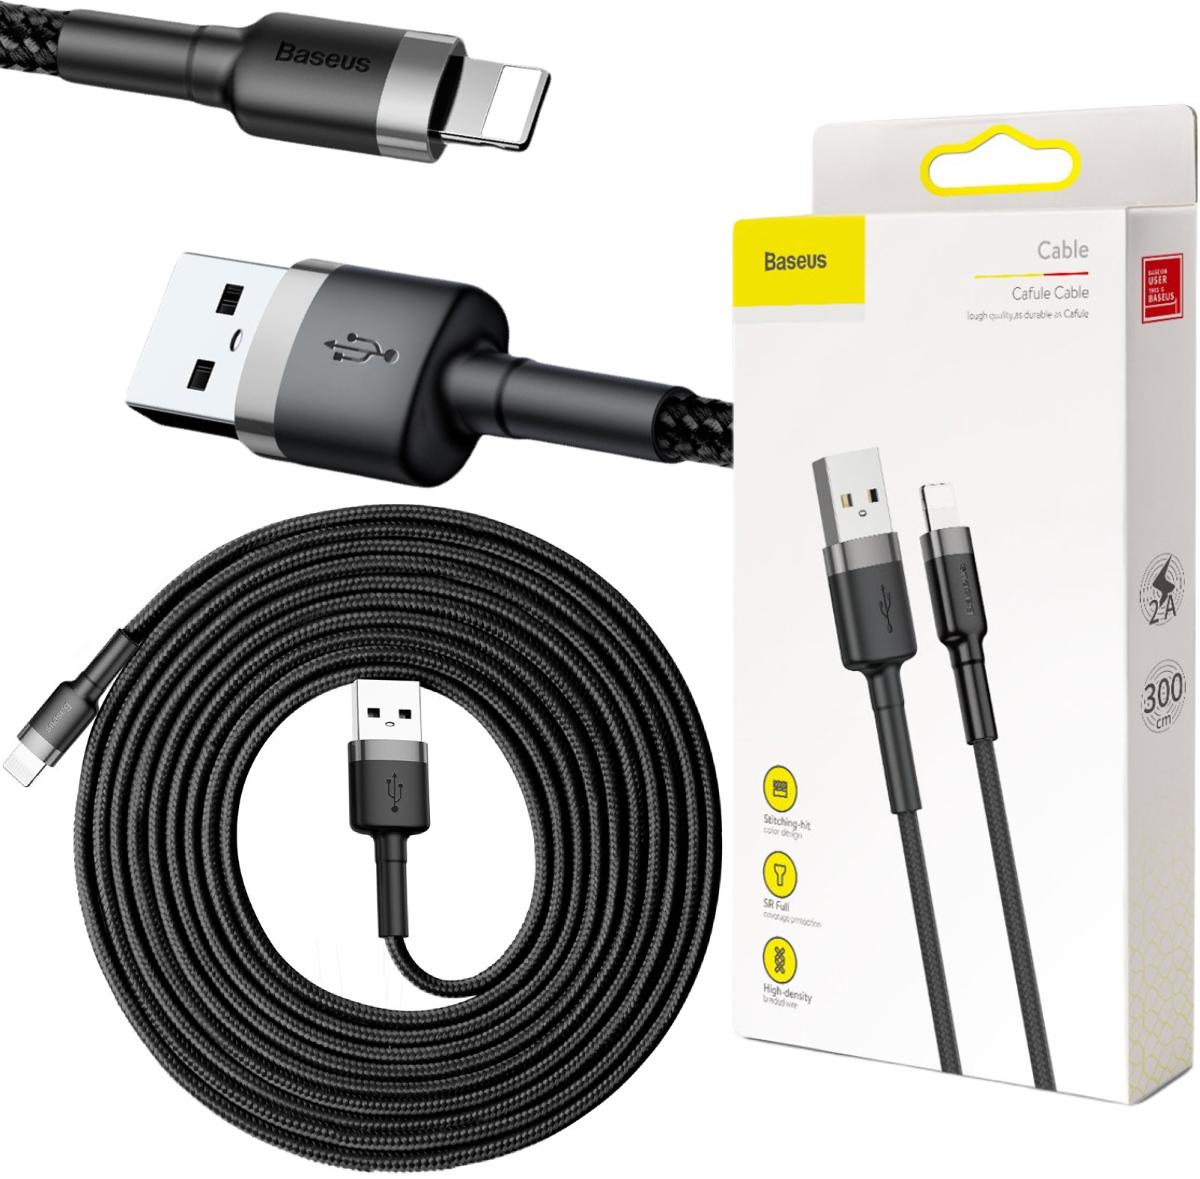 Baseus Cafule Cable wytrzymały nylonowy kabel USB / Lightning QC 3.0 2A 3m w oplocie (CALKLF-RG1) - najważniejsze cechy: